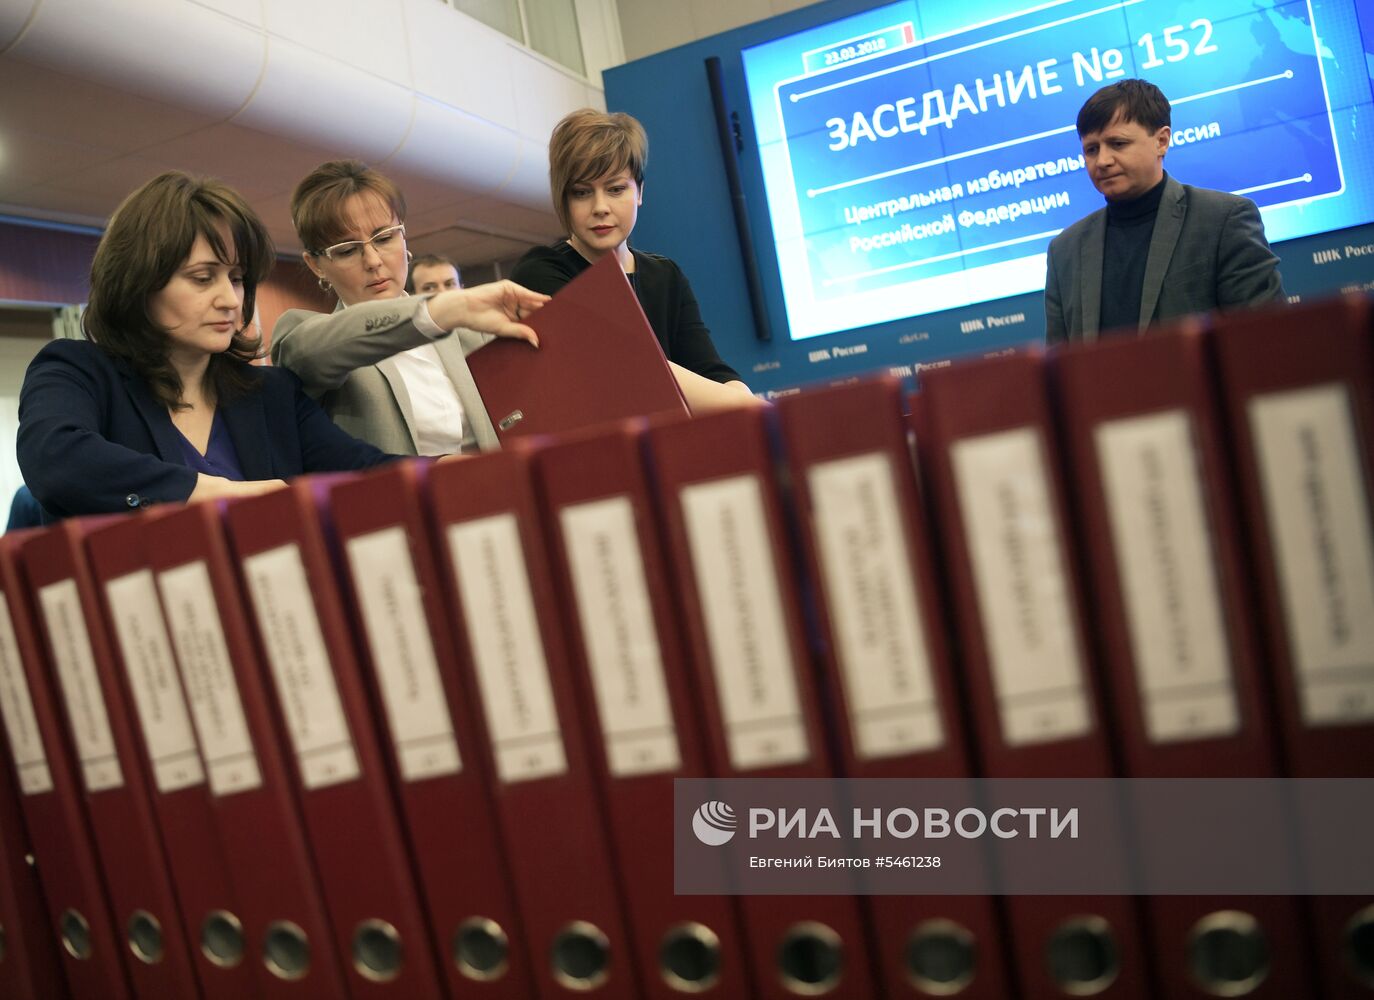 Оглашение итогов голосования на выборах президента РФ